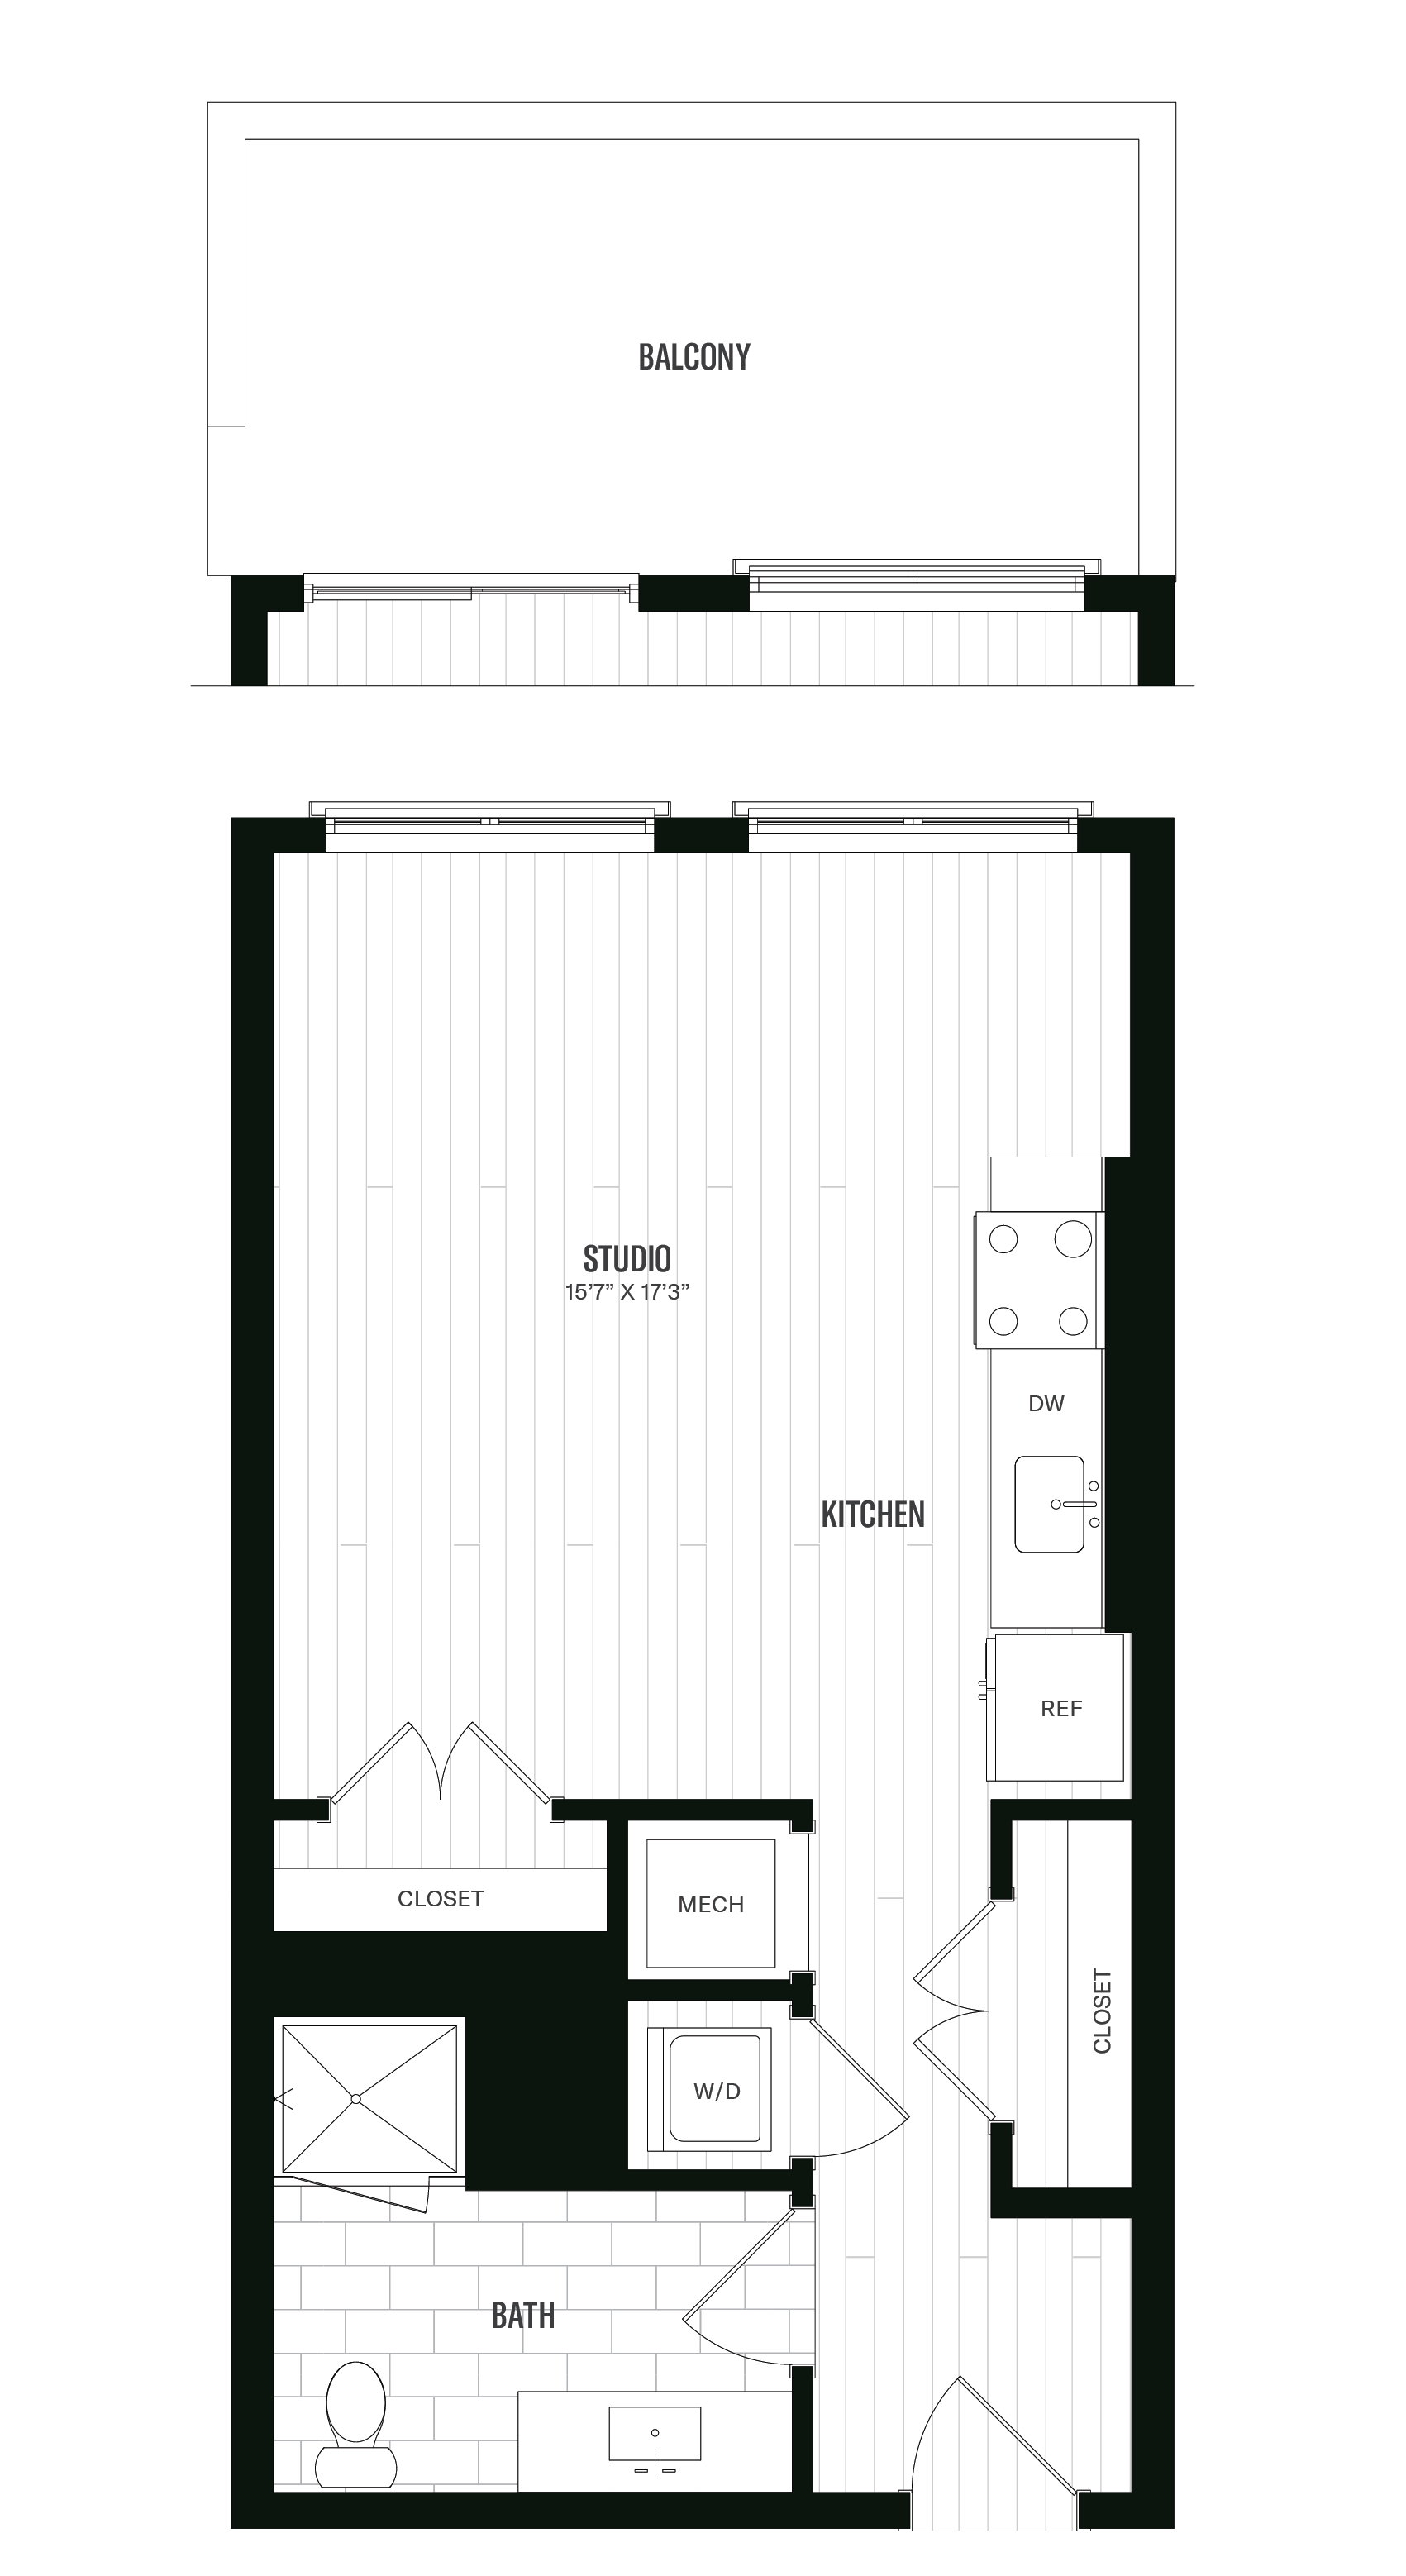 Floorplan image of unit 405